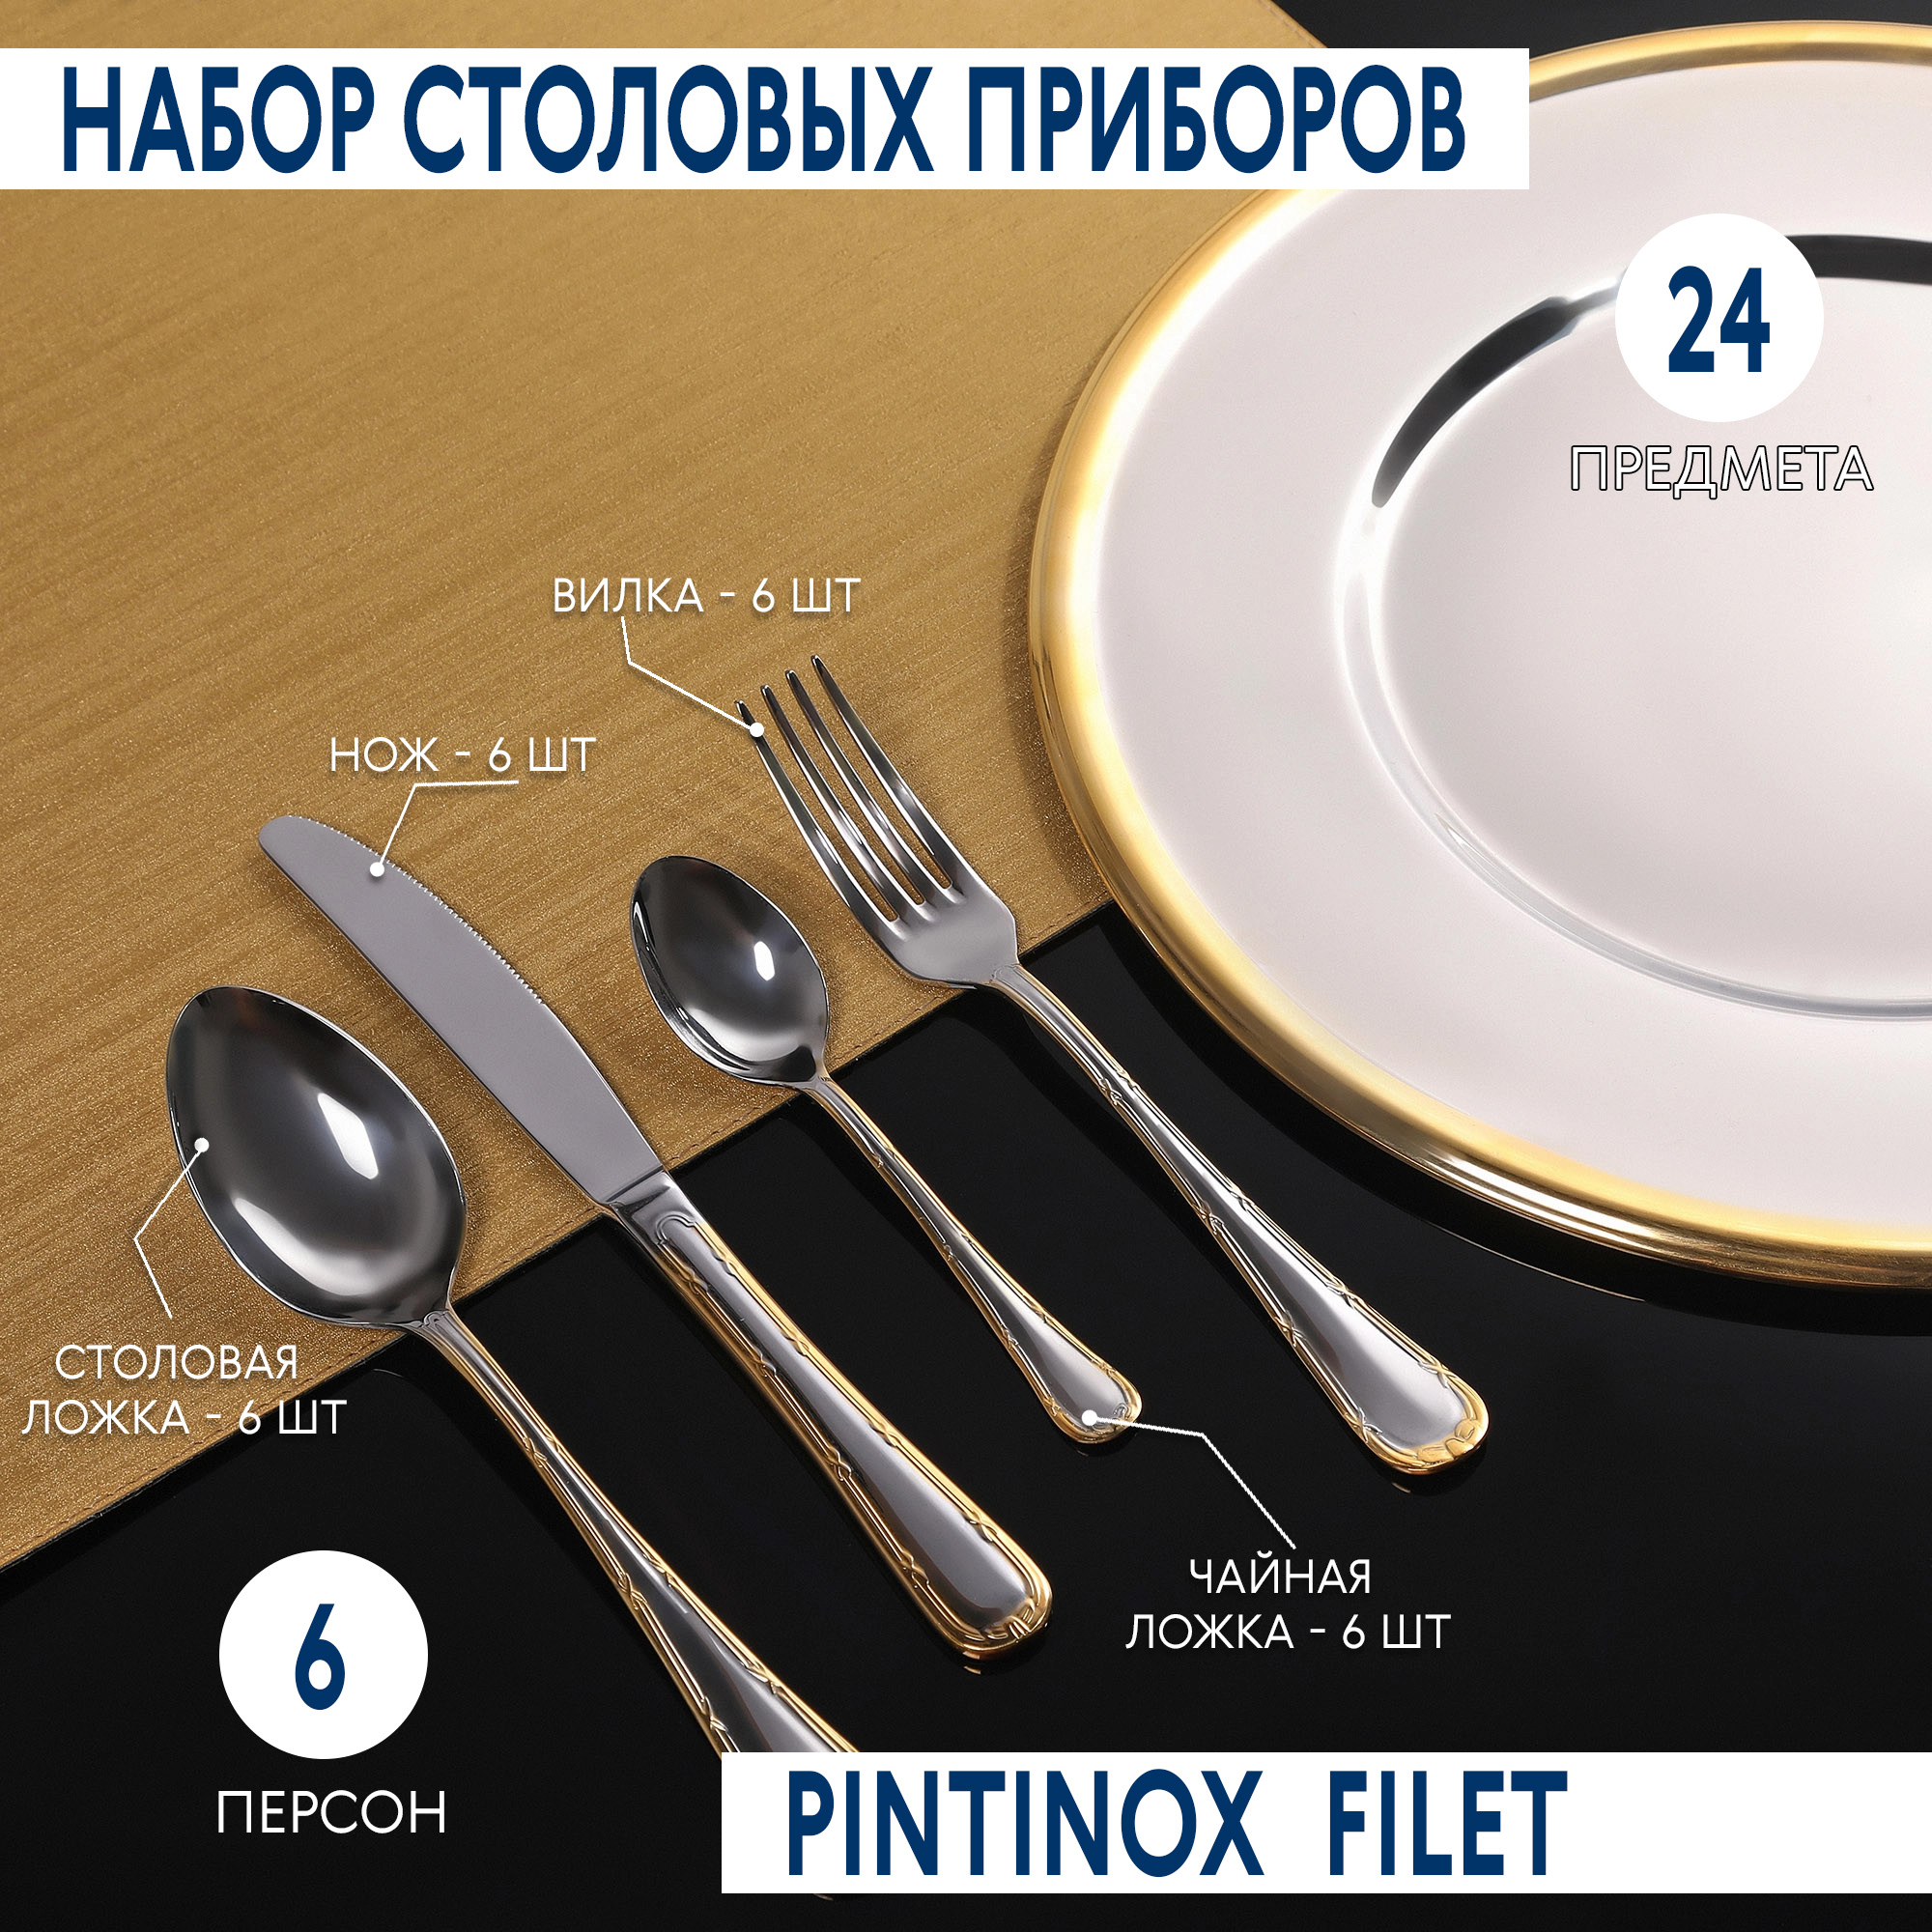 Набор столовых приборов Pintinox Filet 24 предмета, цвет серебристый - фото 2